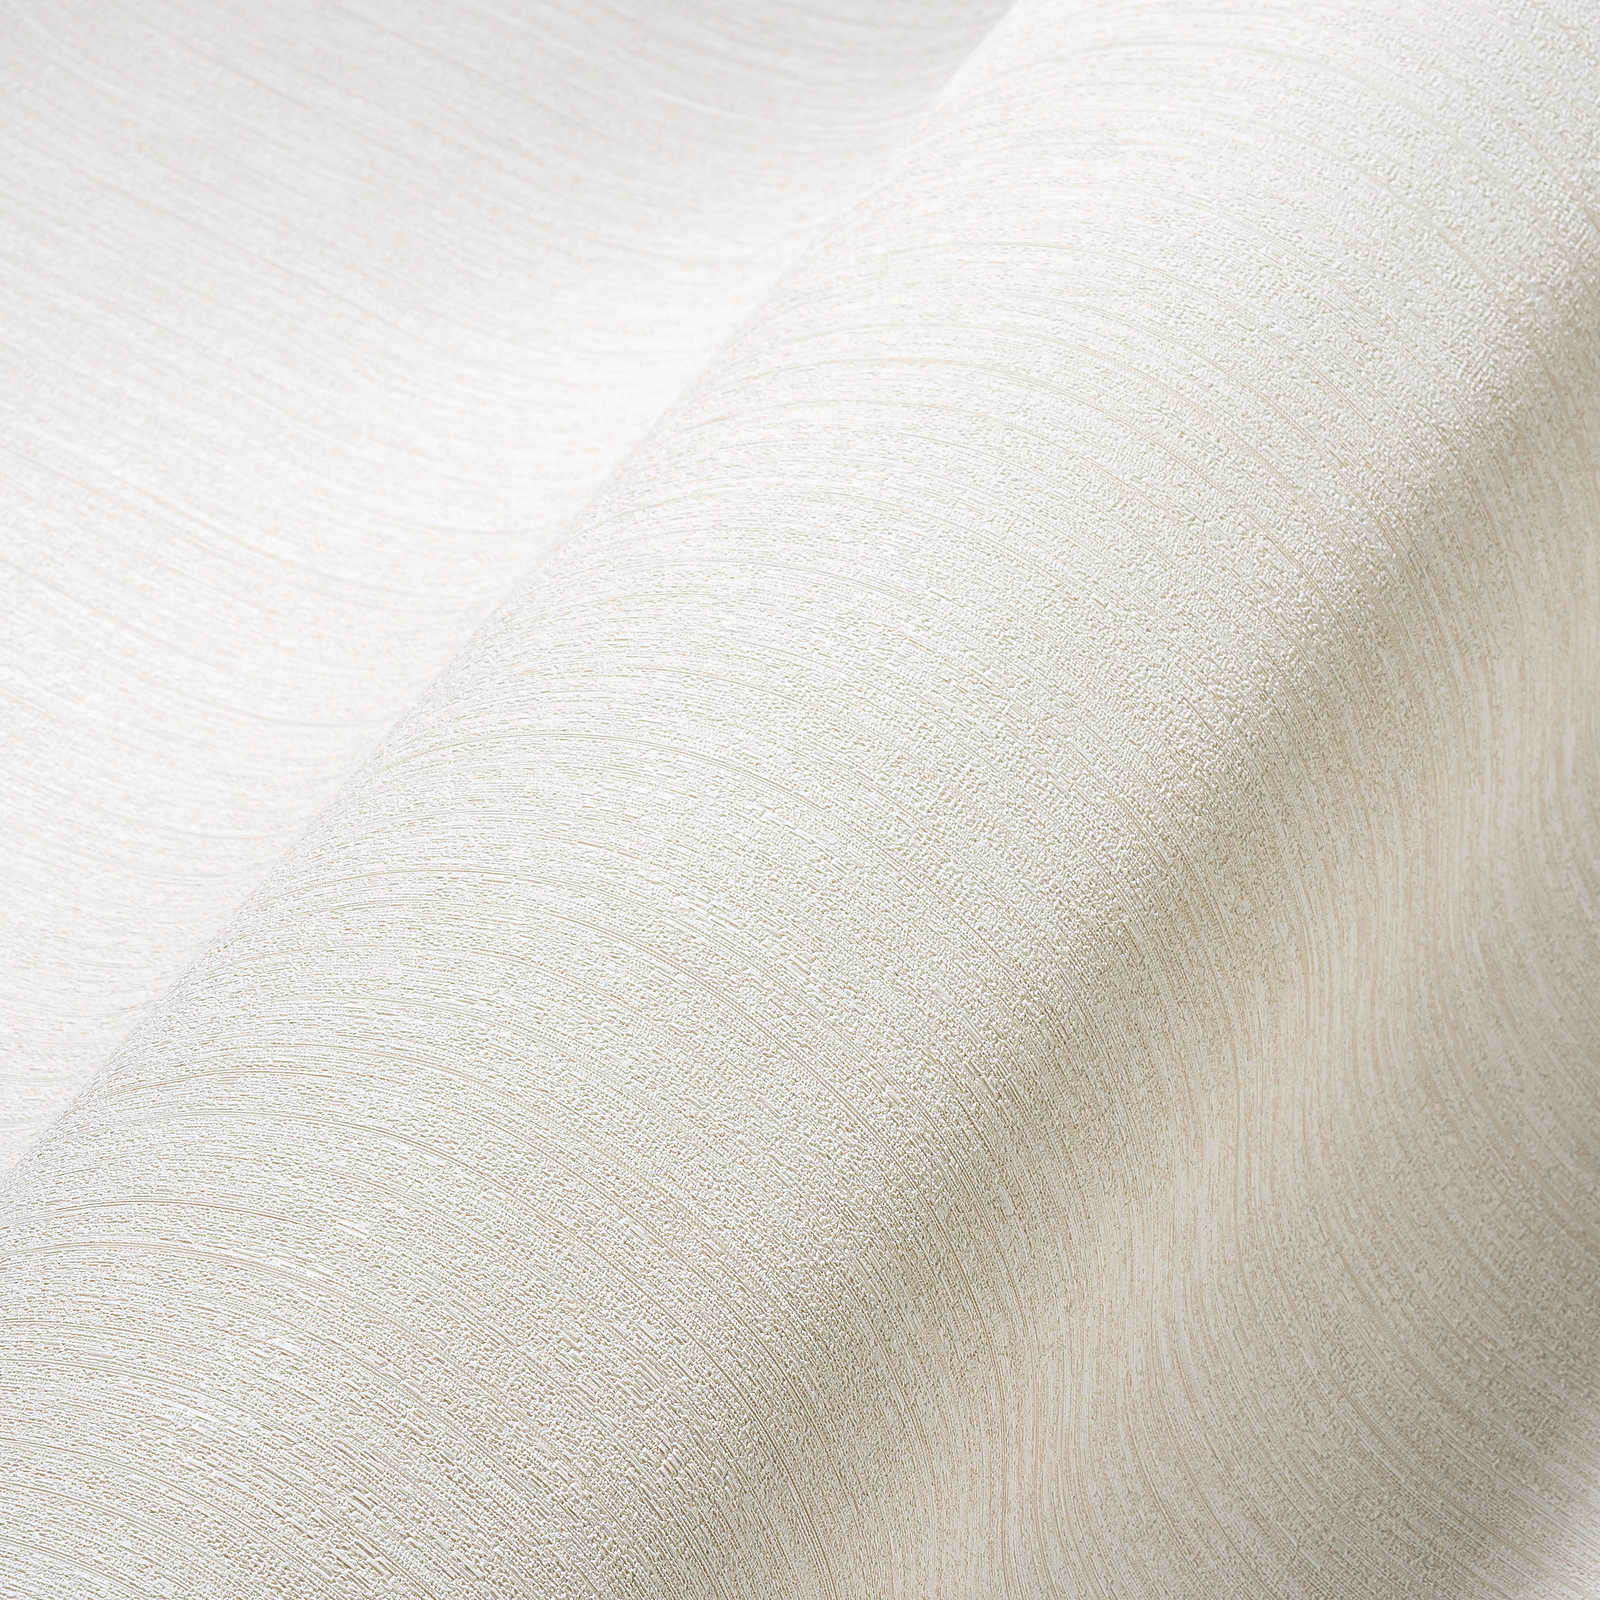             Papier peint blanc crème satiné avec effet texturé naturel
        